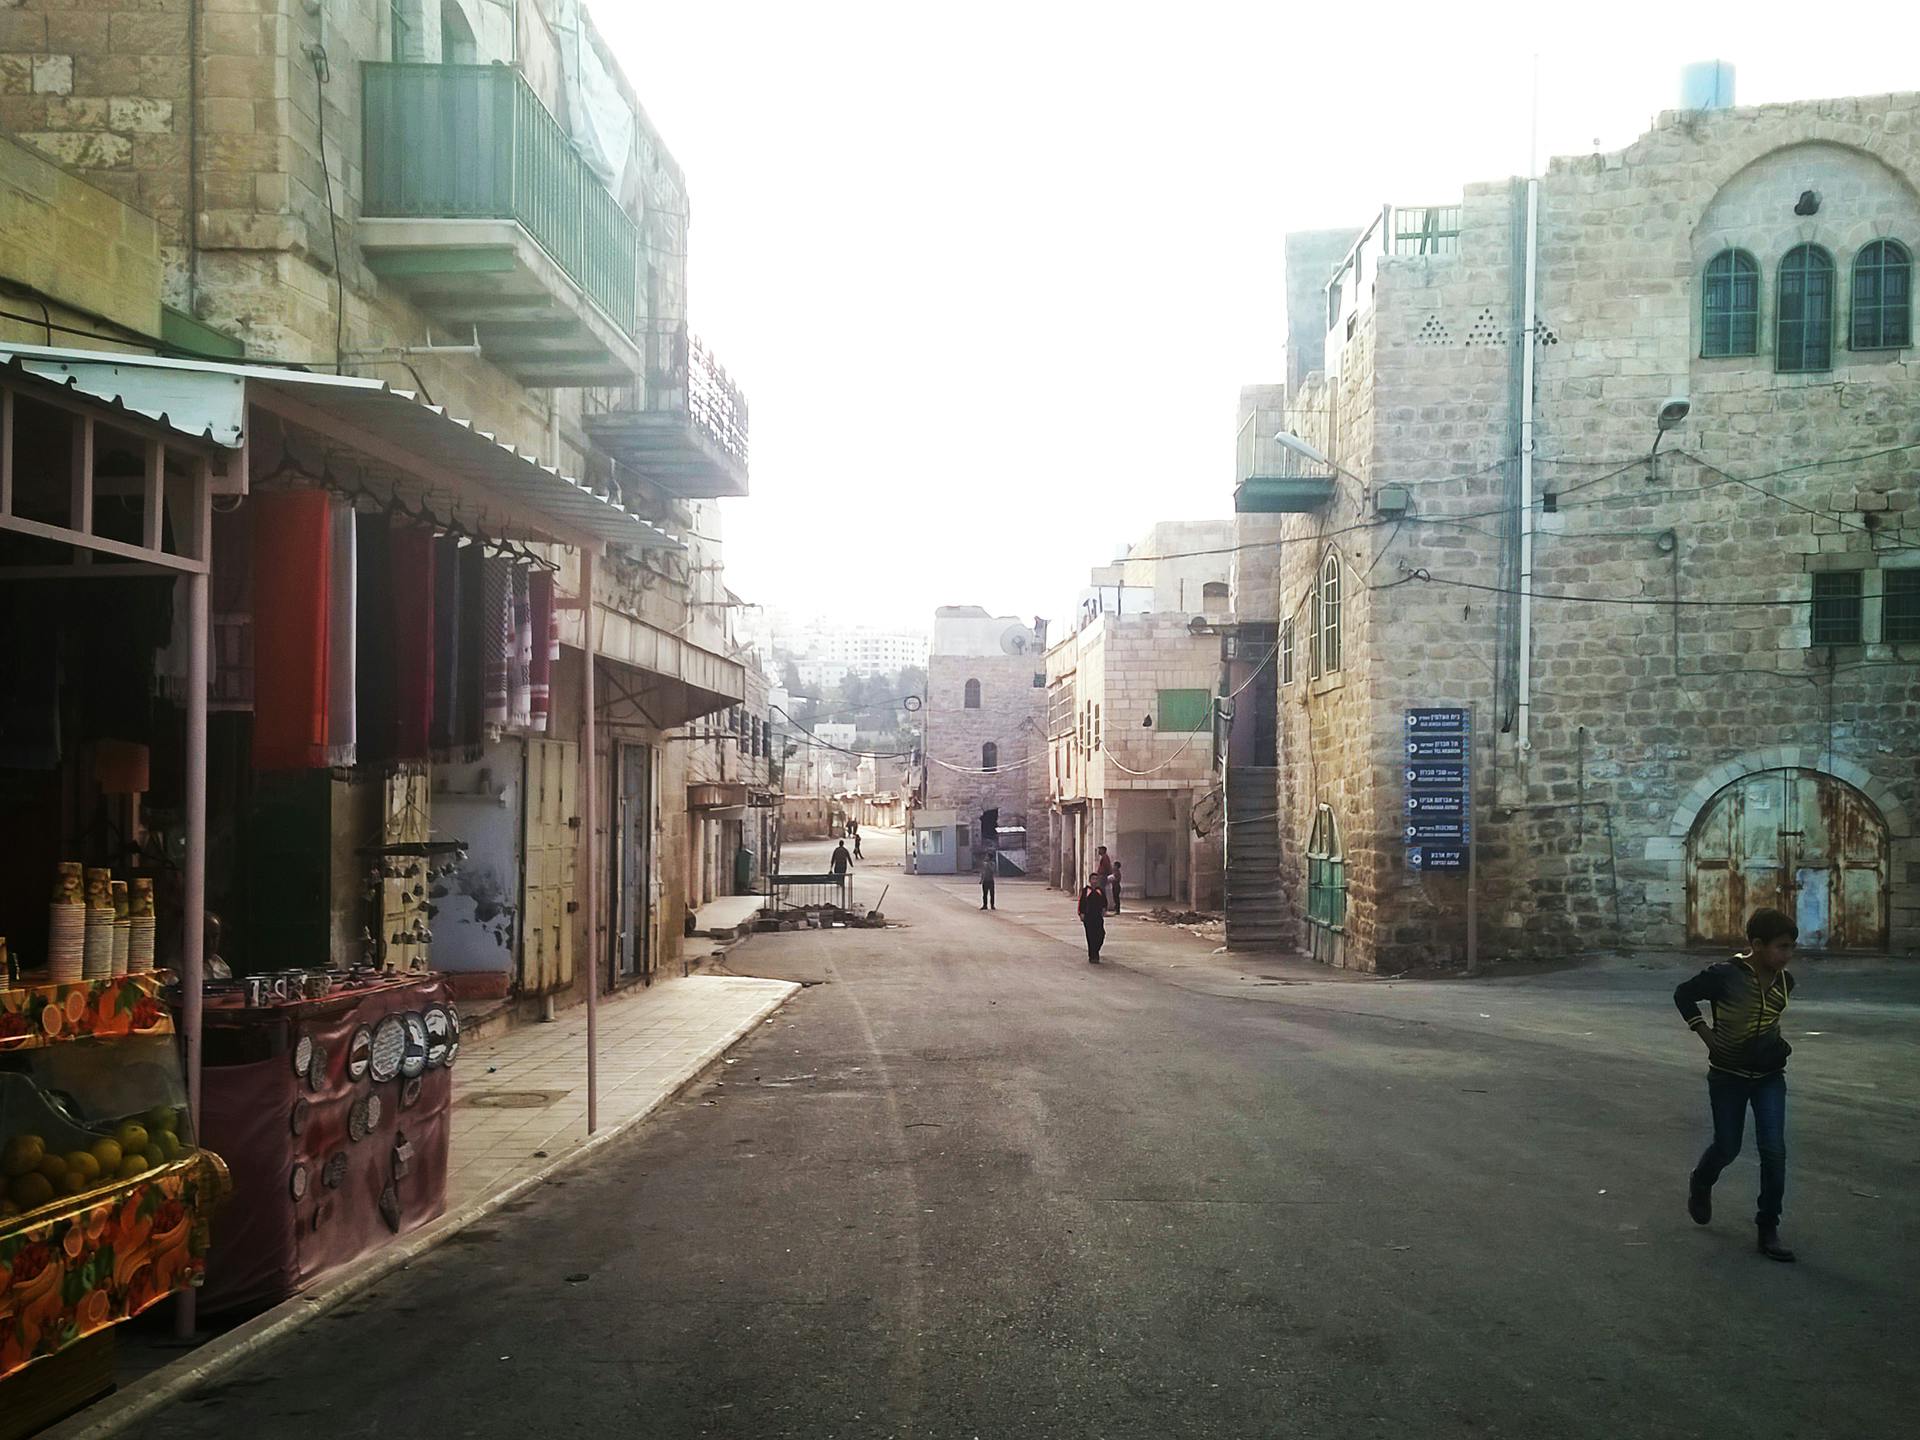 A street view in Jerusalem